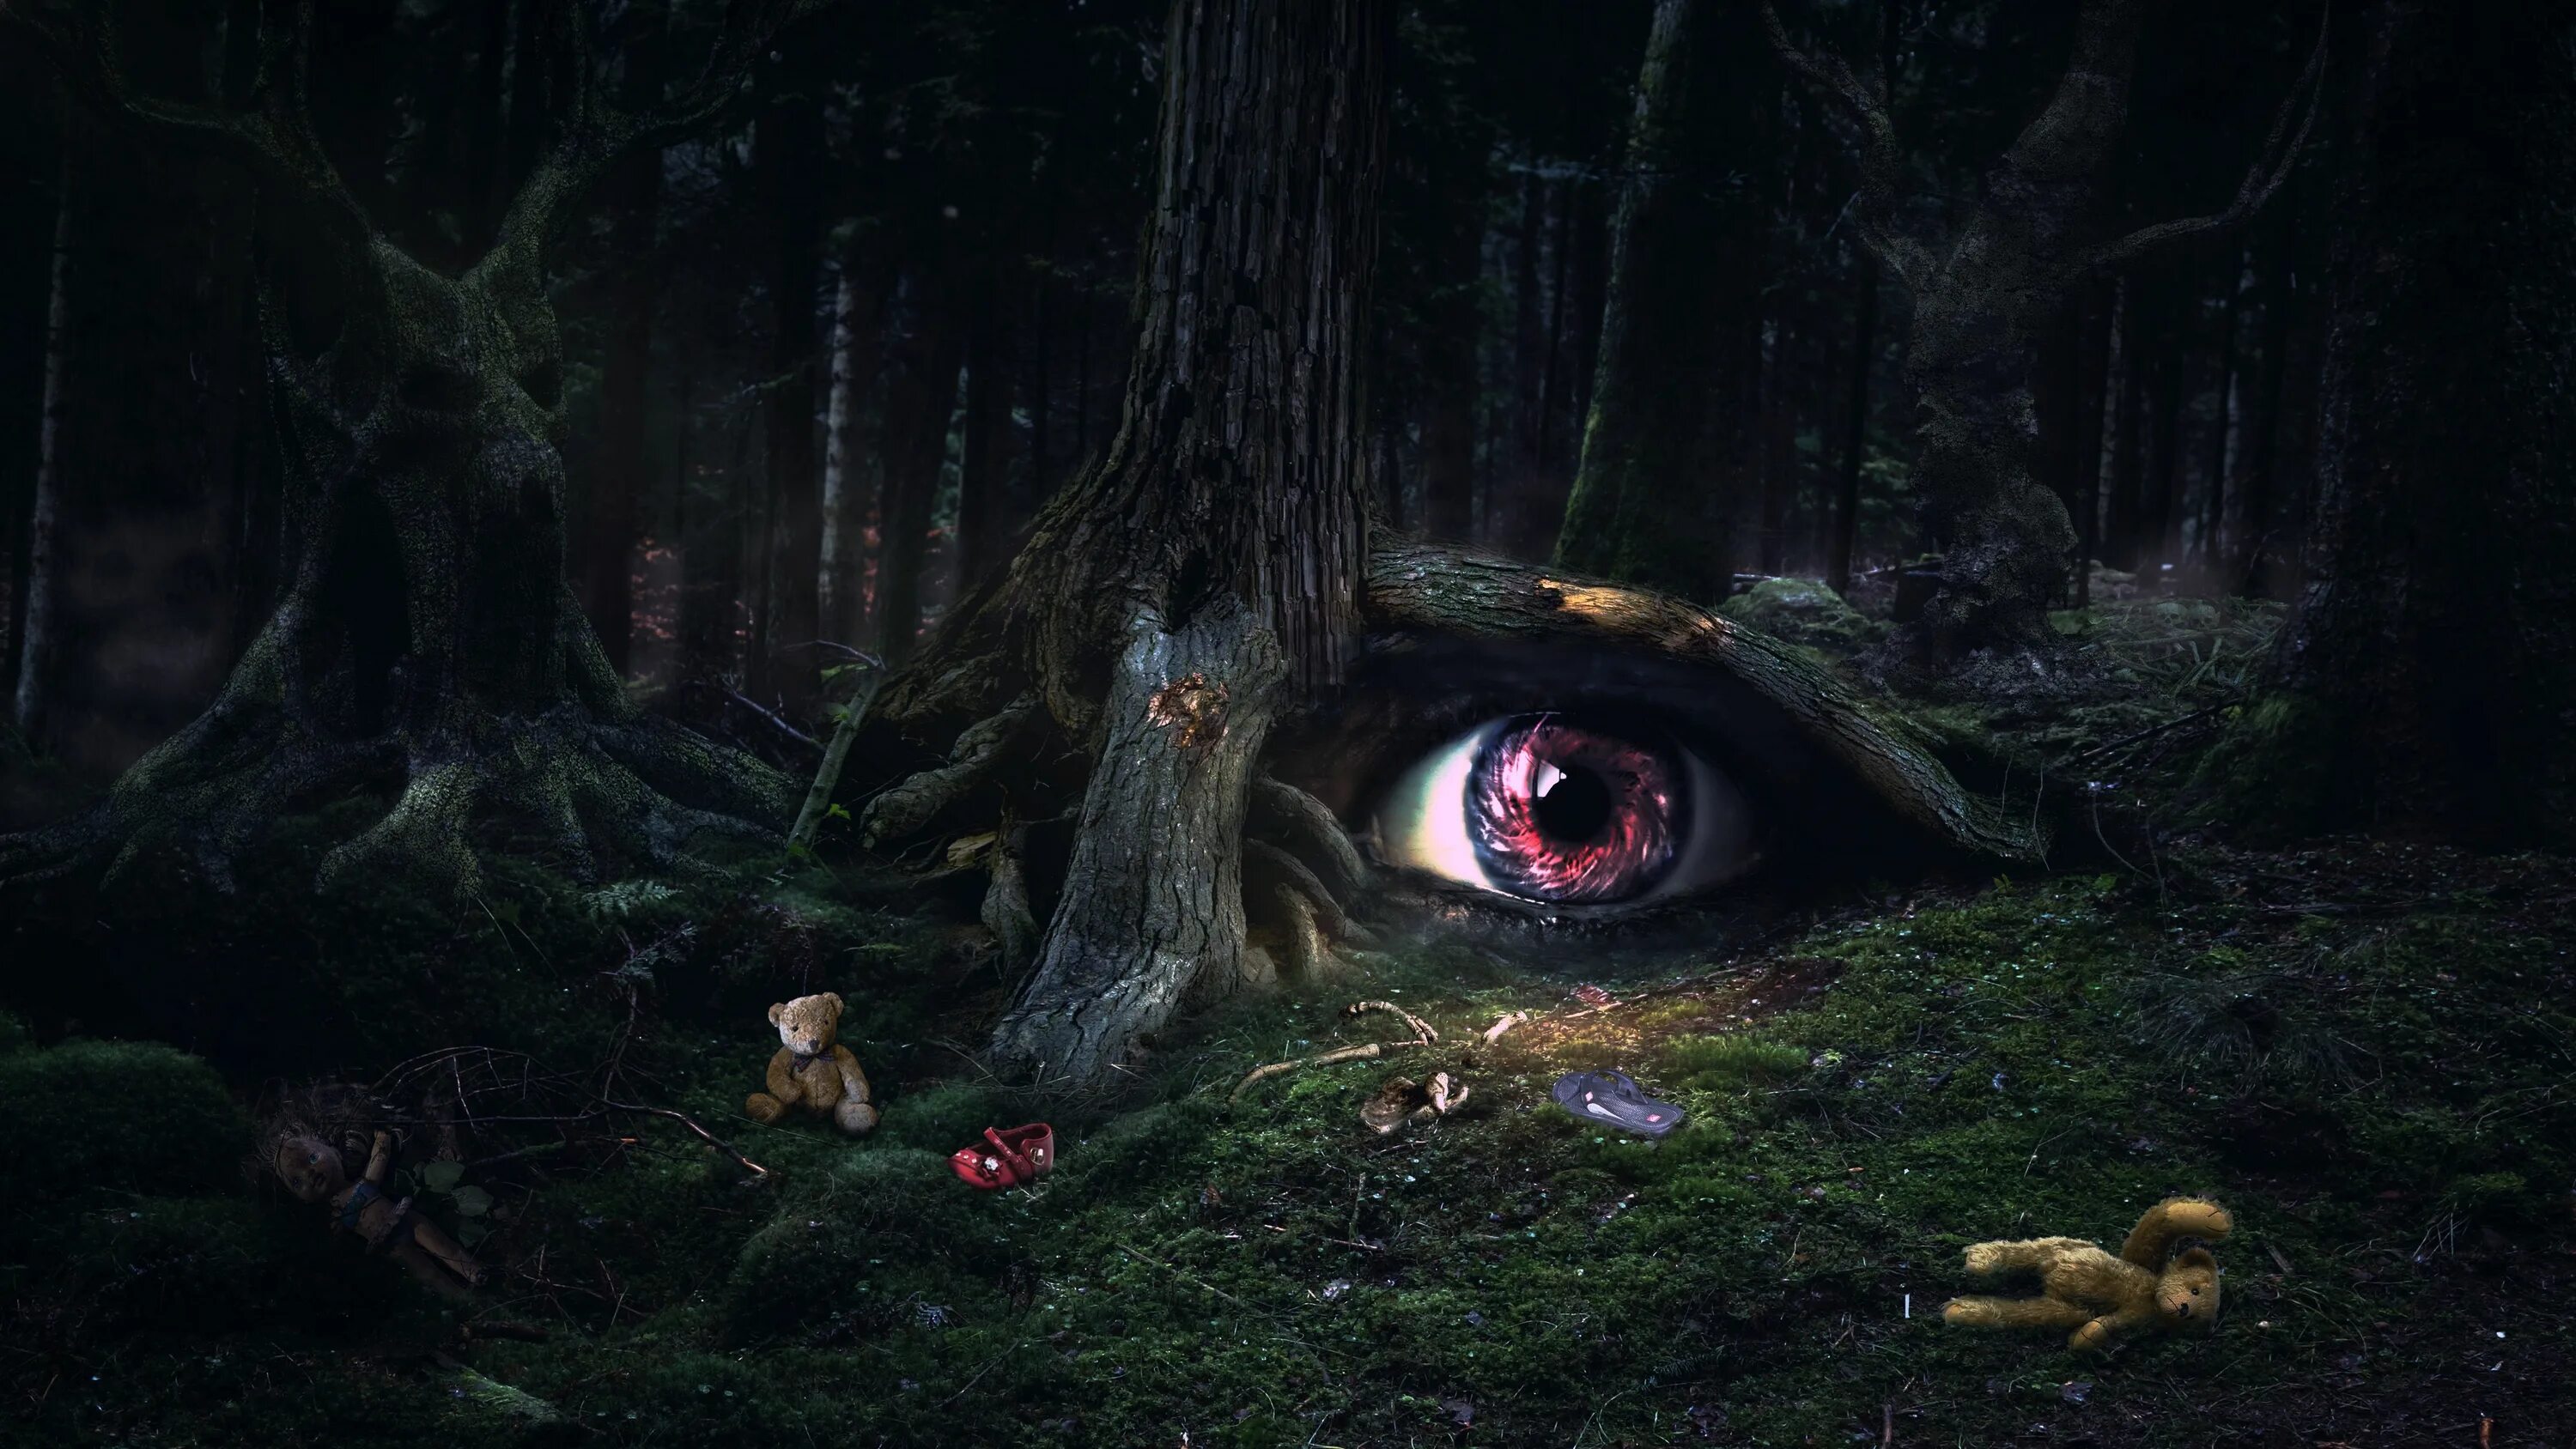 Глазок лесной. Страшный лес. Темный дремучий лес. Мистический дремучий лес. Темный лес ужасы.